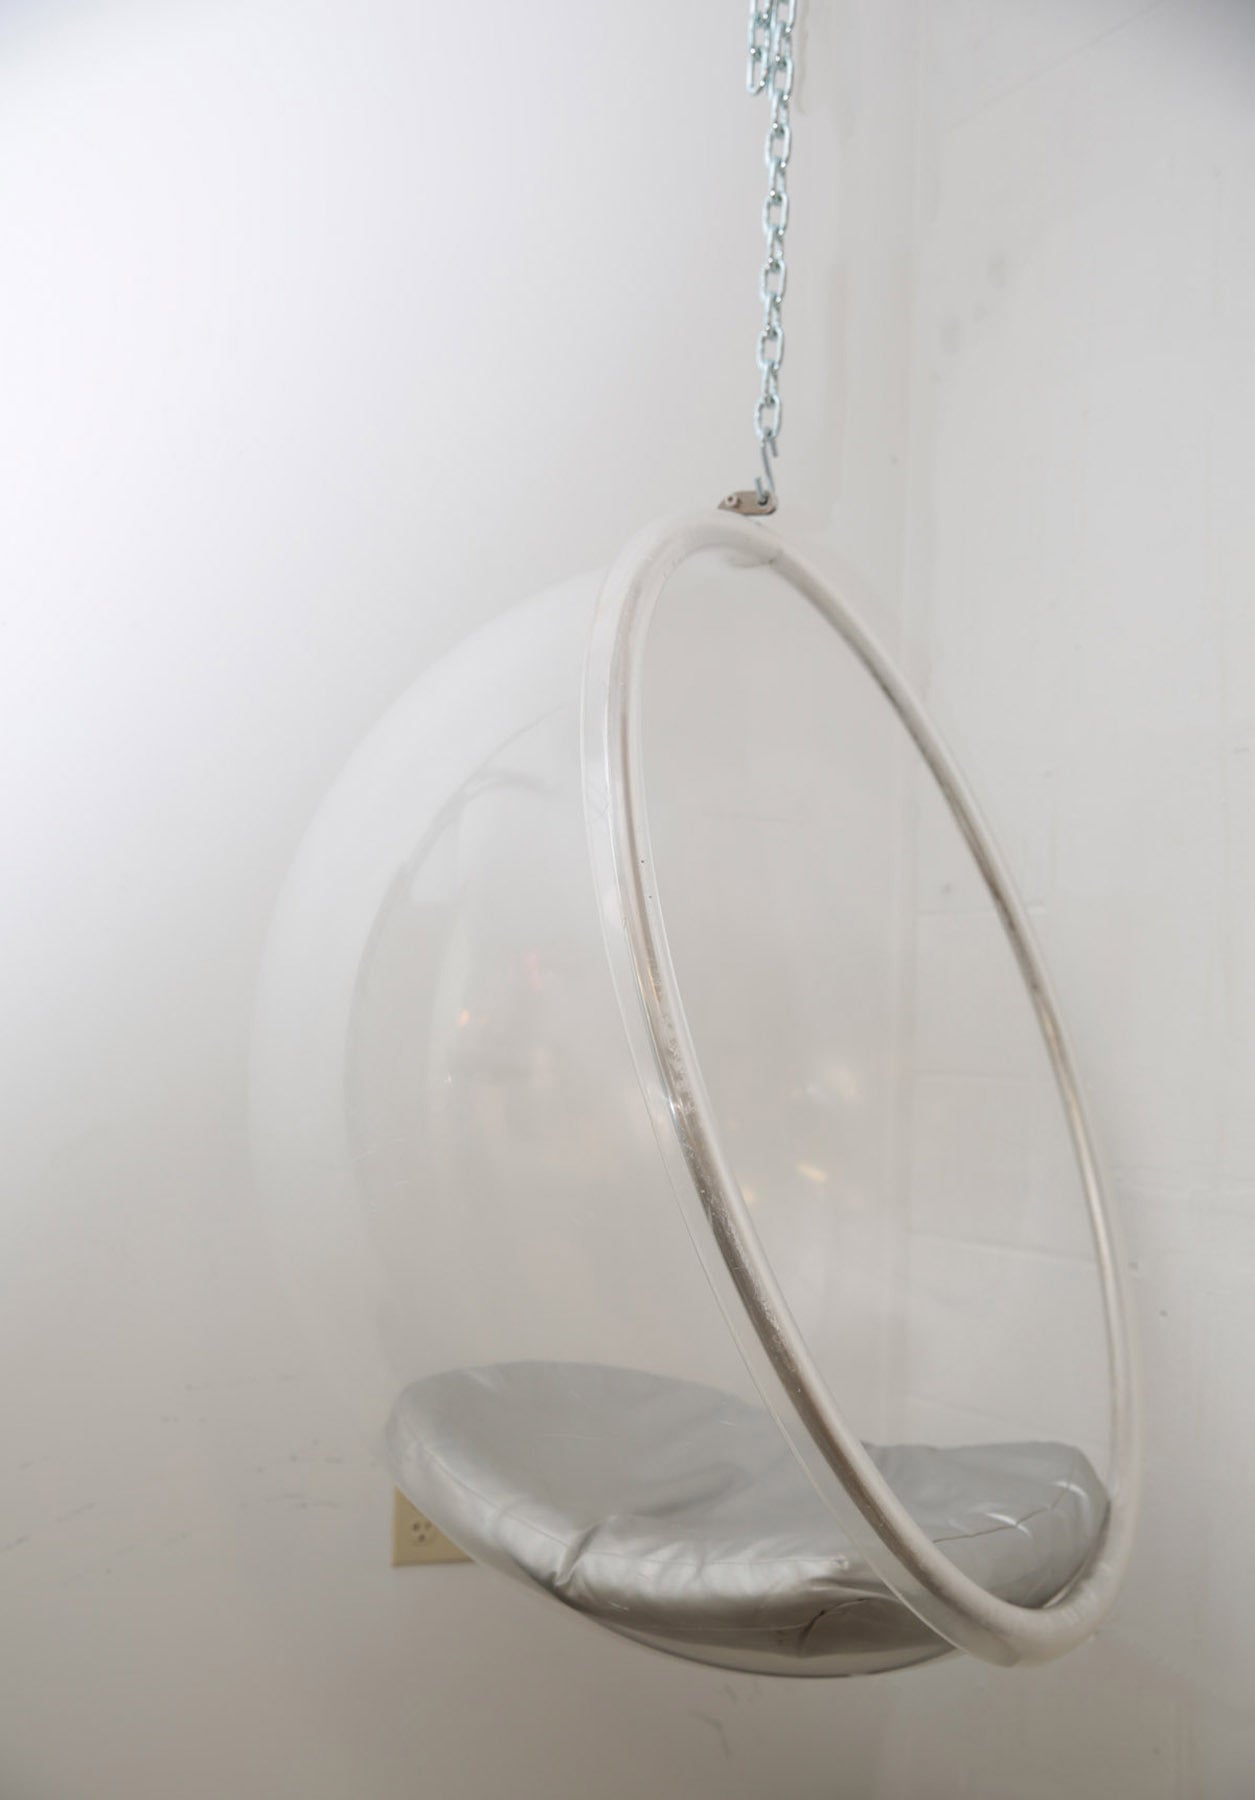 eero aarnio hanging bubble chair